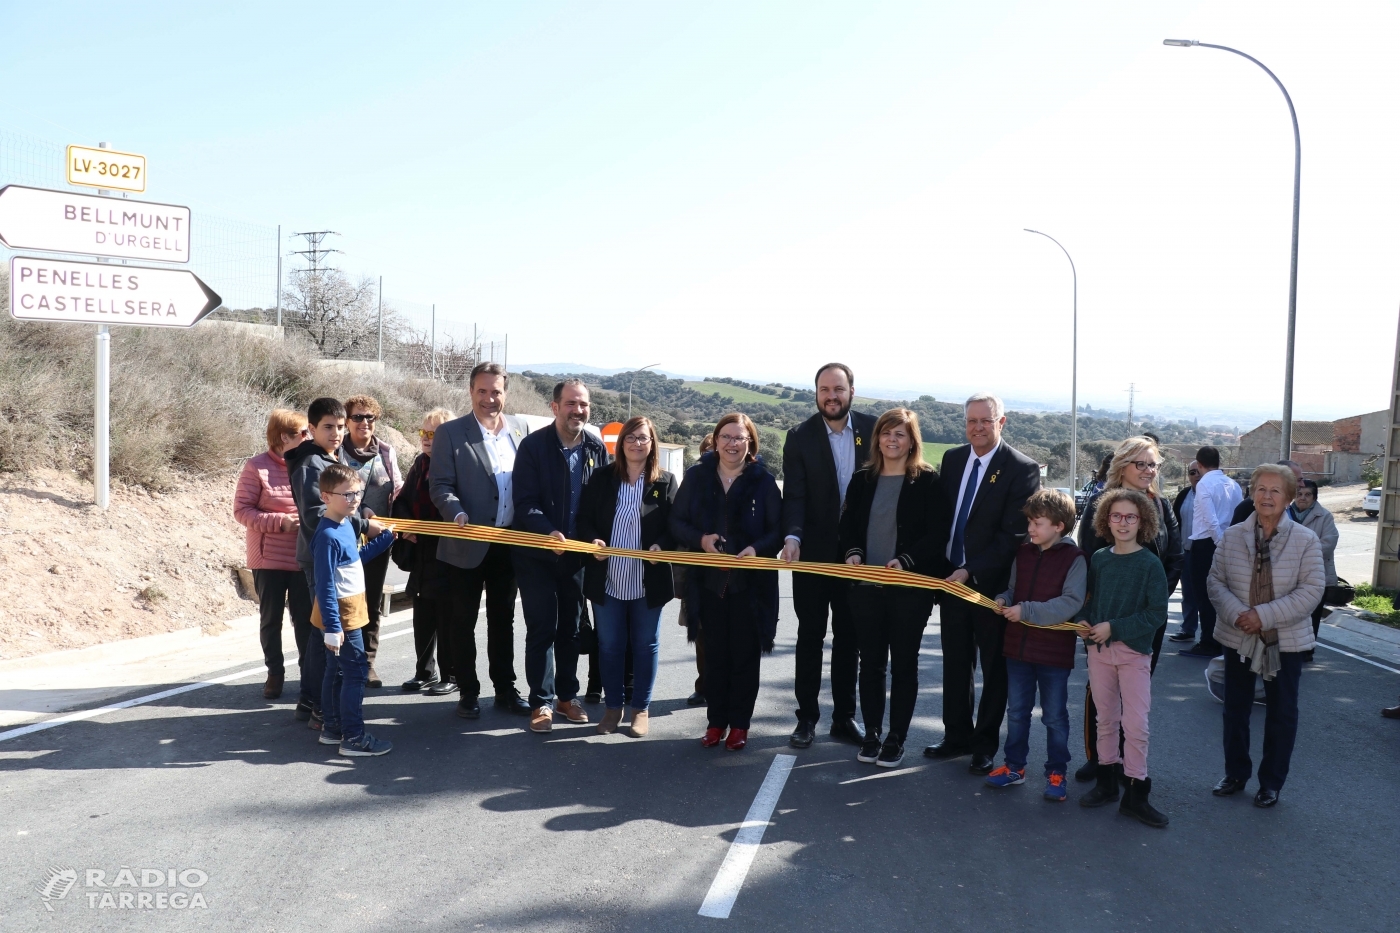 Rosa Maria Perelló inaugura les millores de la carretera LV-3027 entre Bellmunt, Penelles i Castellserà